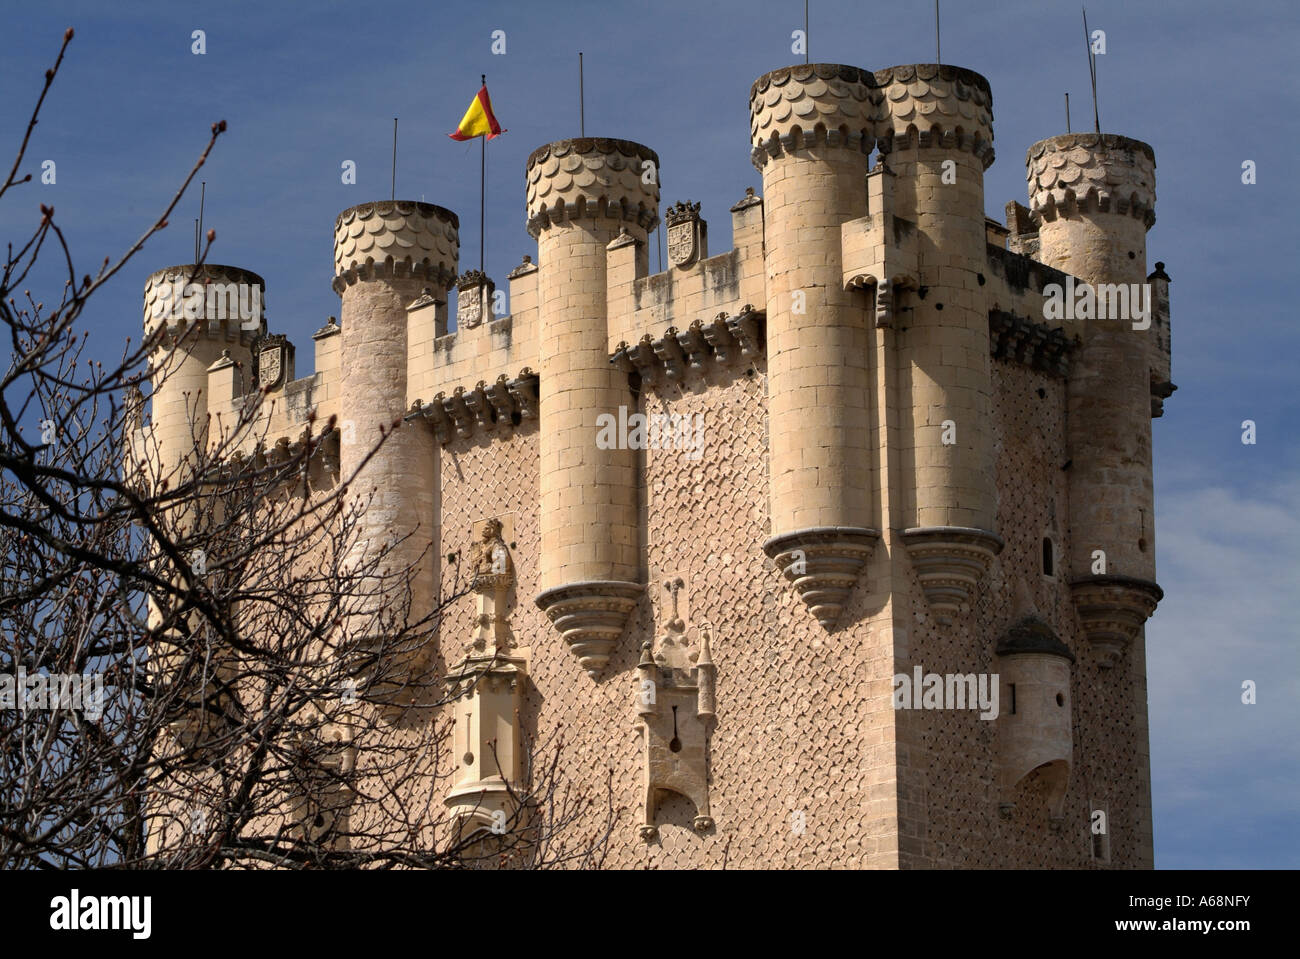 Donjon of The Alcazar. Segovia. Spain Stock Photo